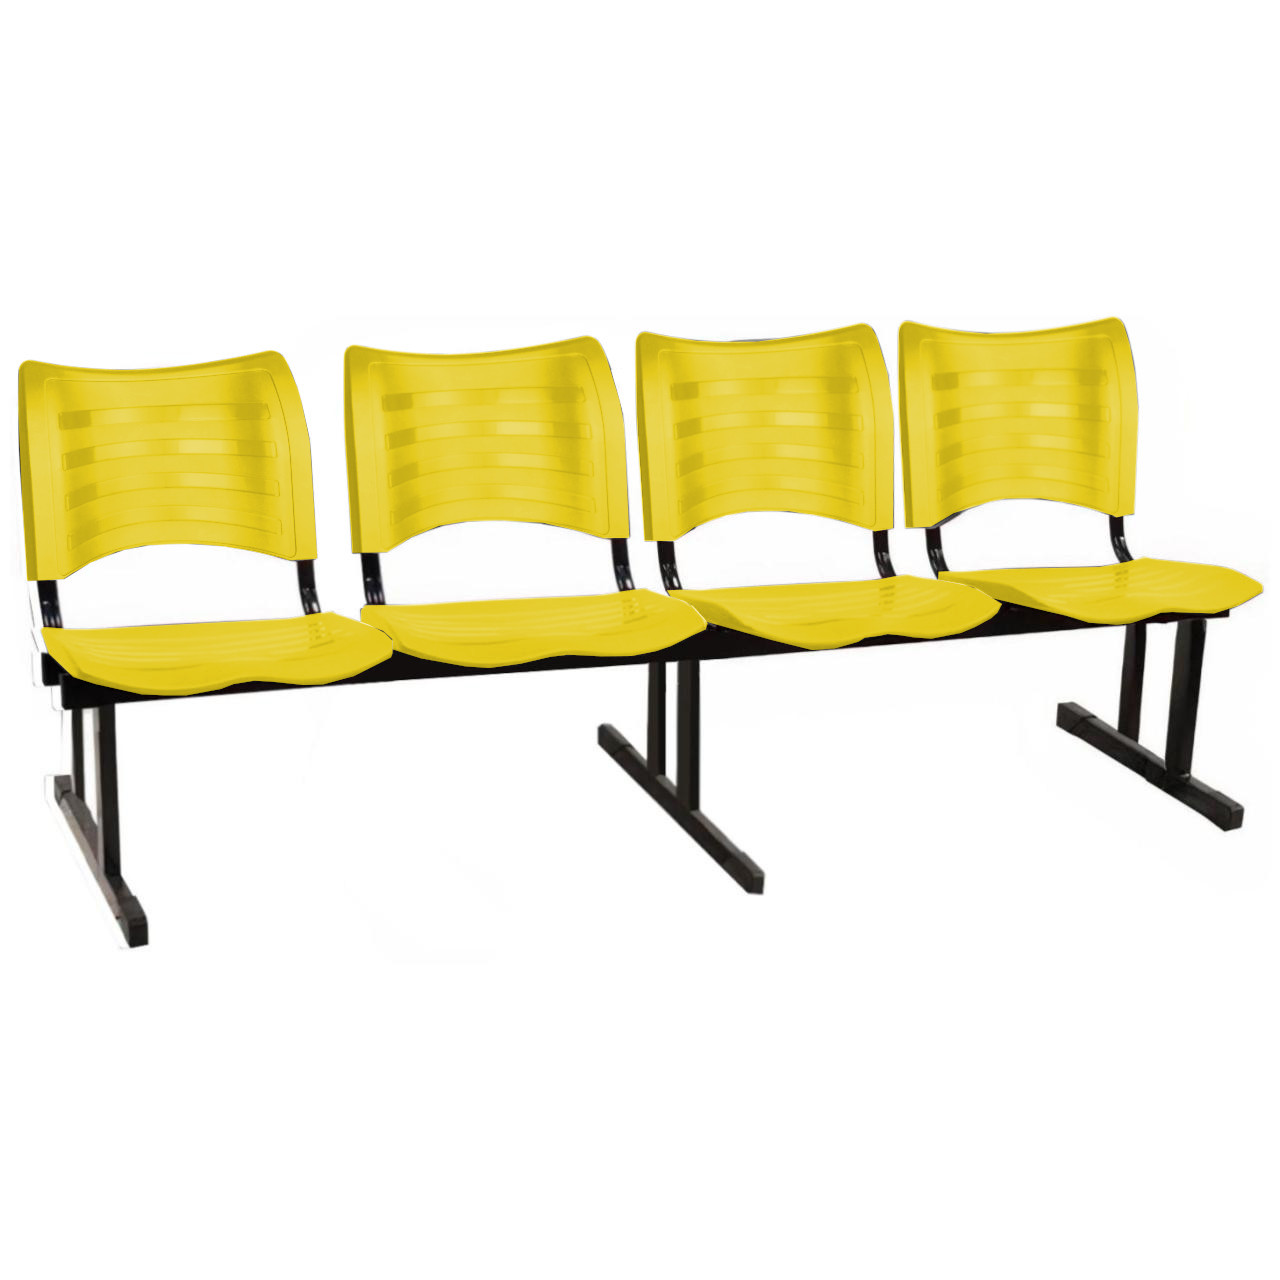 Cadeira Longarina PLÁSTICA 04 Lugares – Cor Amarelo – MRPLAST – 34195 Araguaia Móveis para Escritório